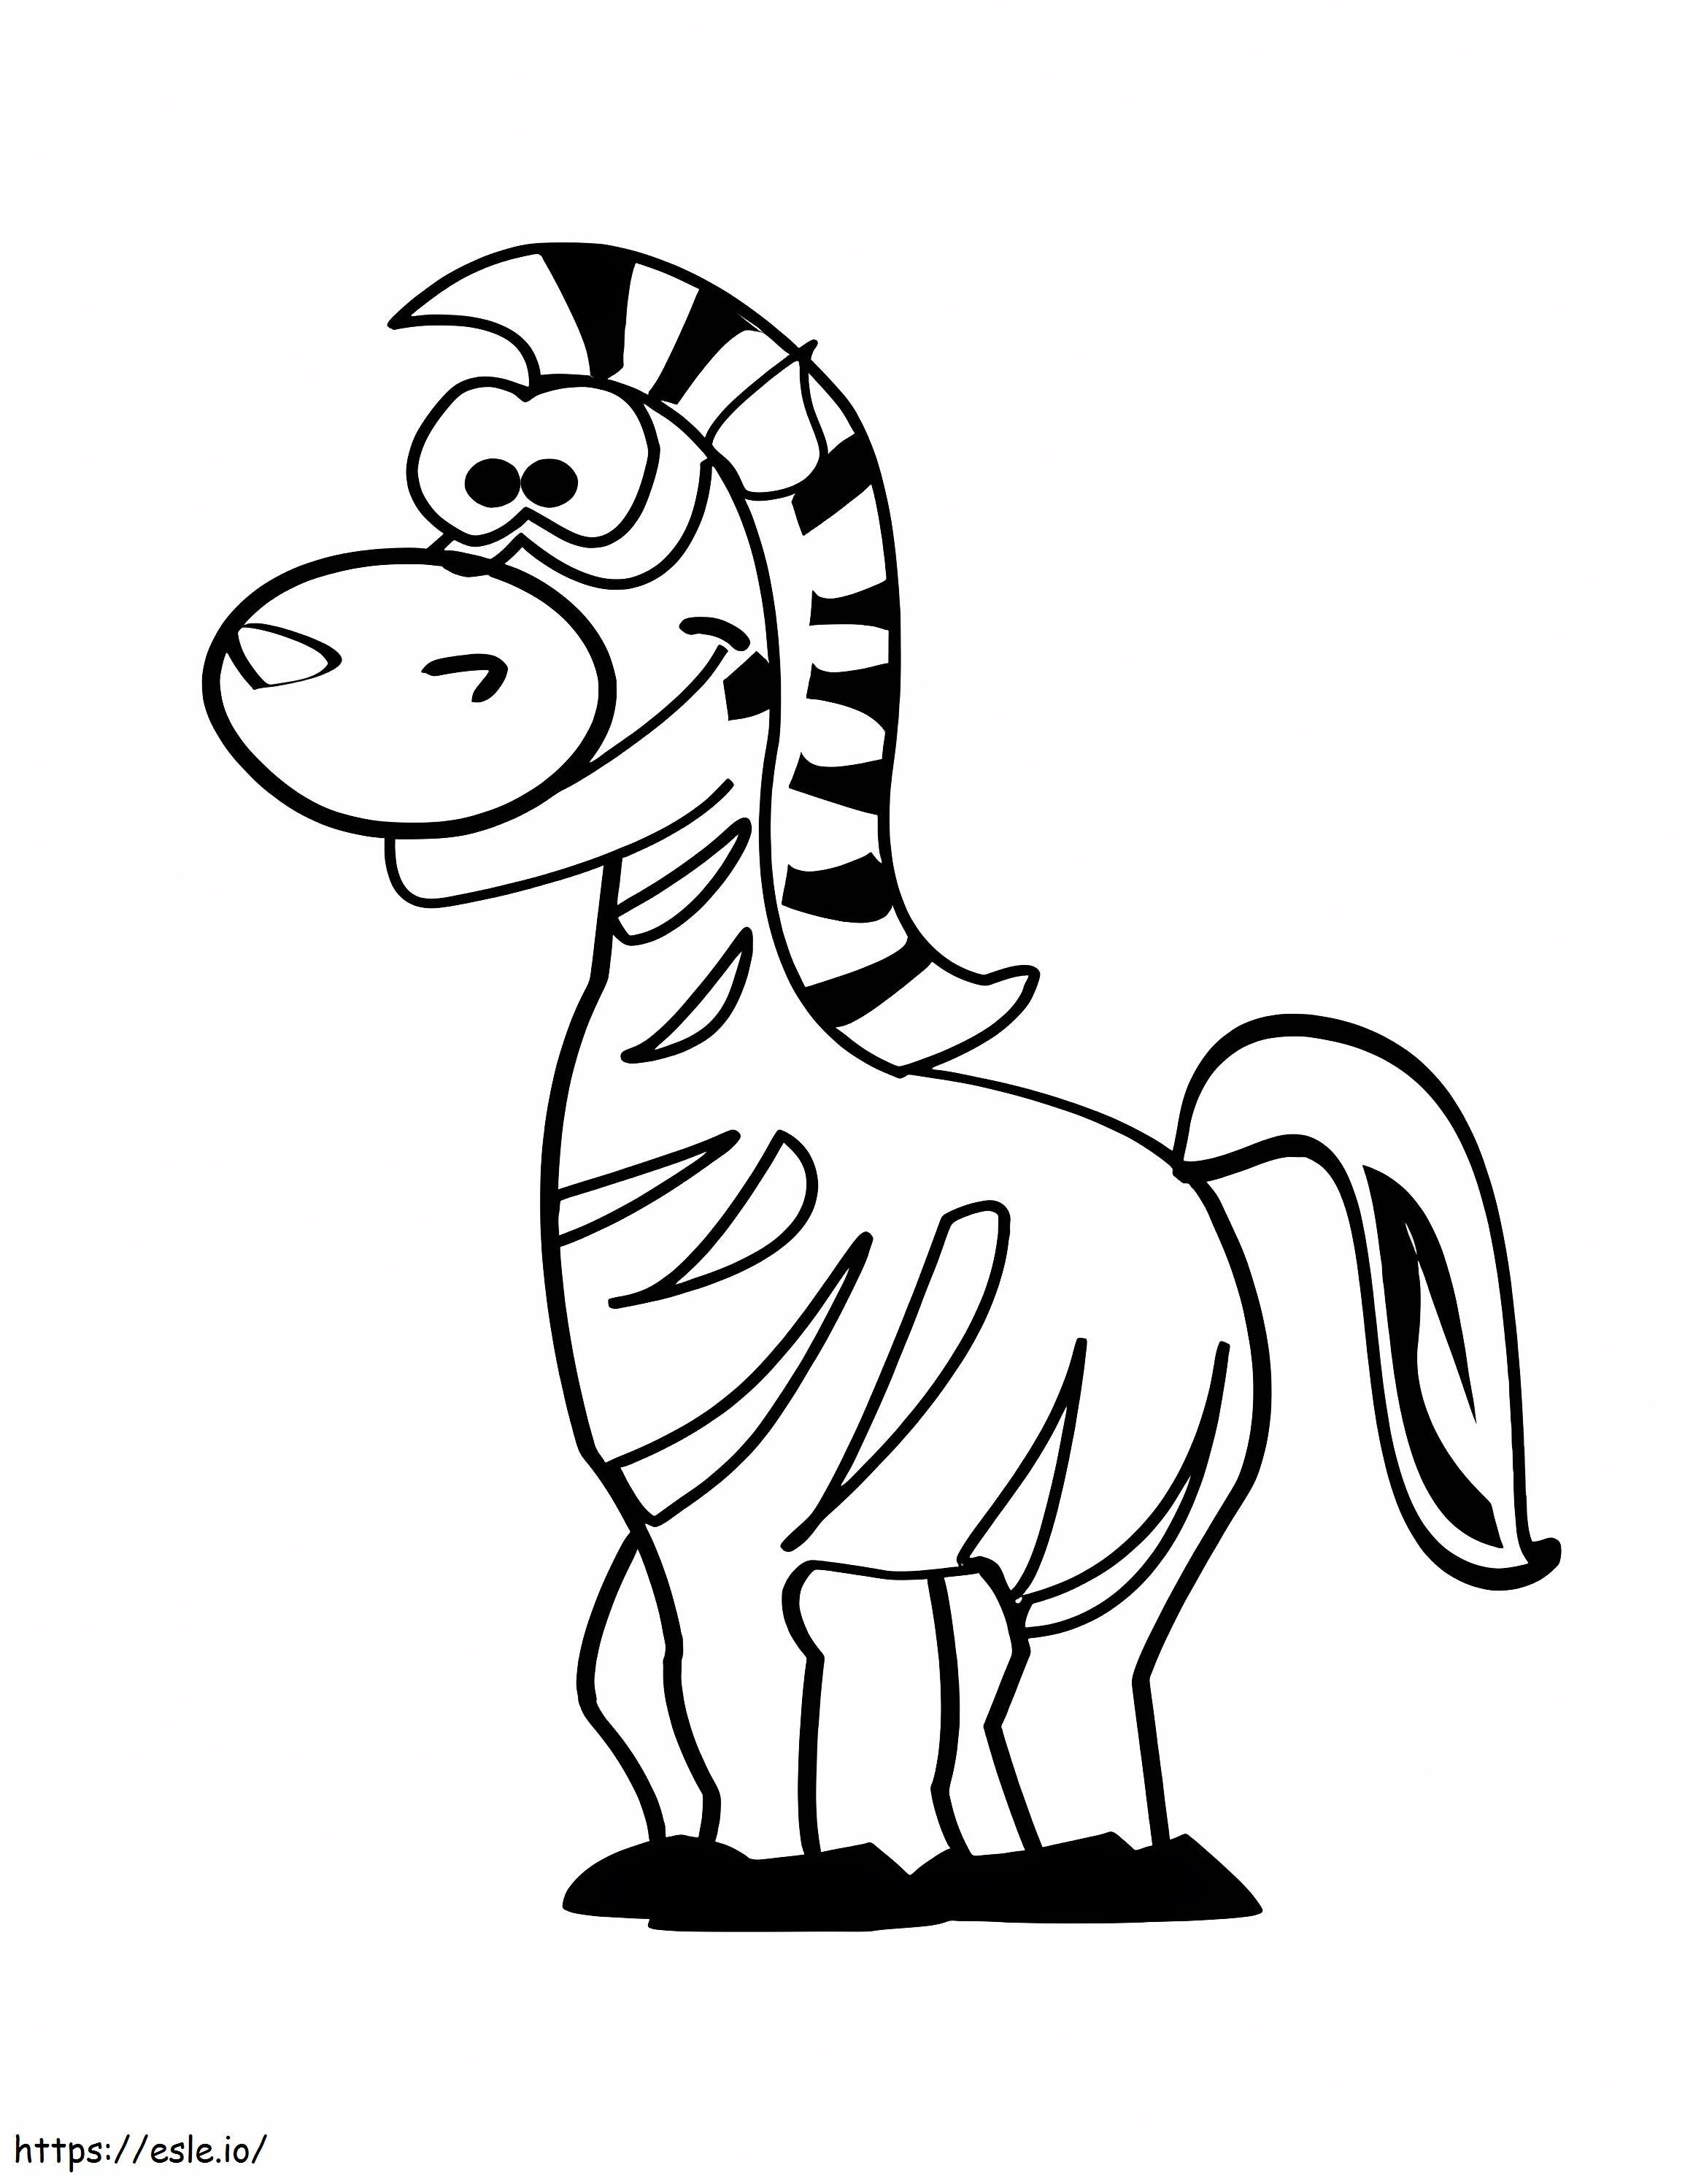 Zebra divertente da colorare